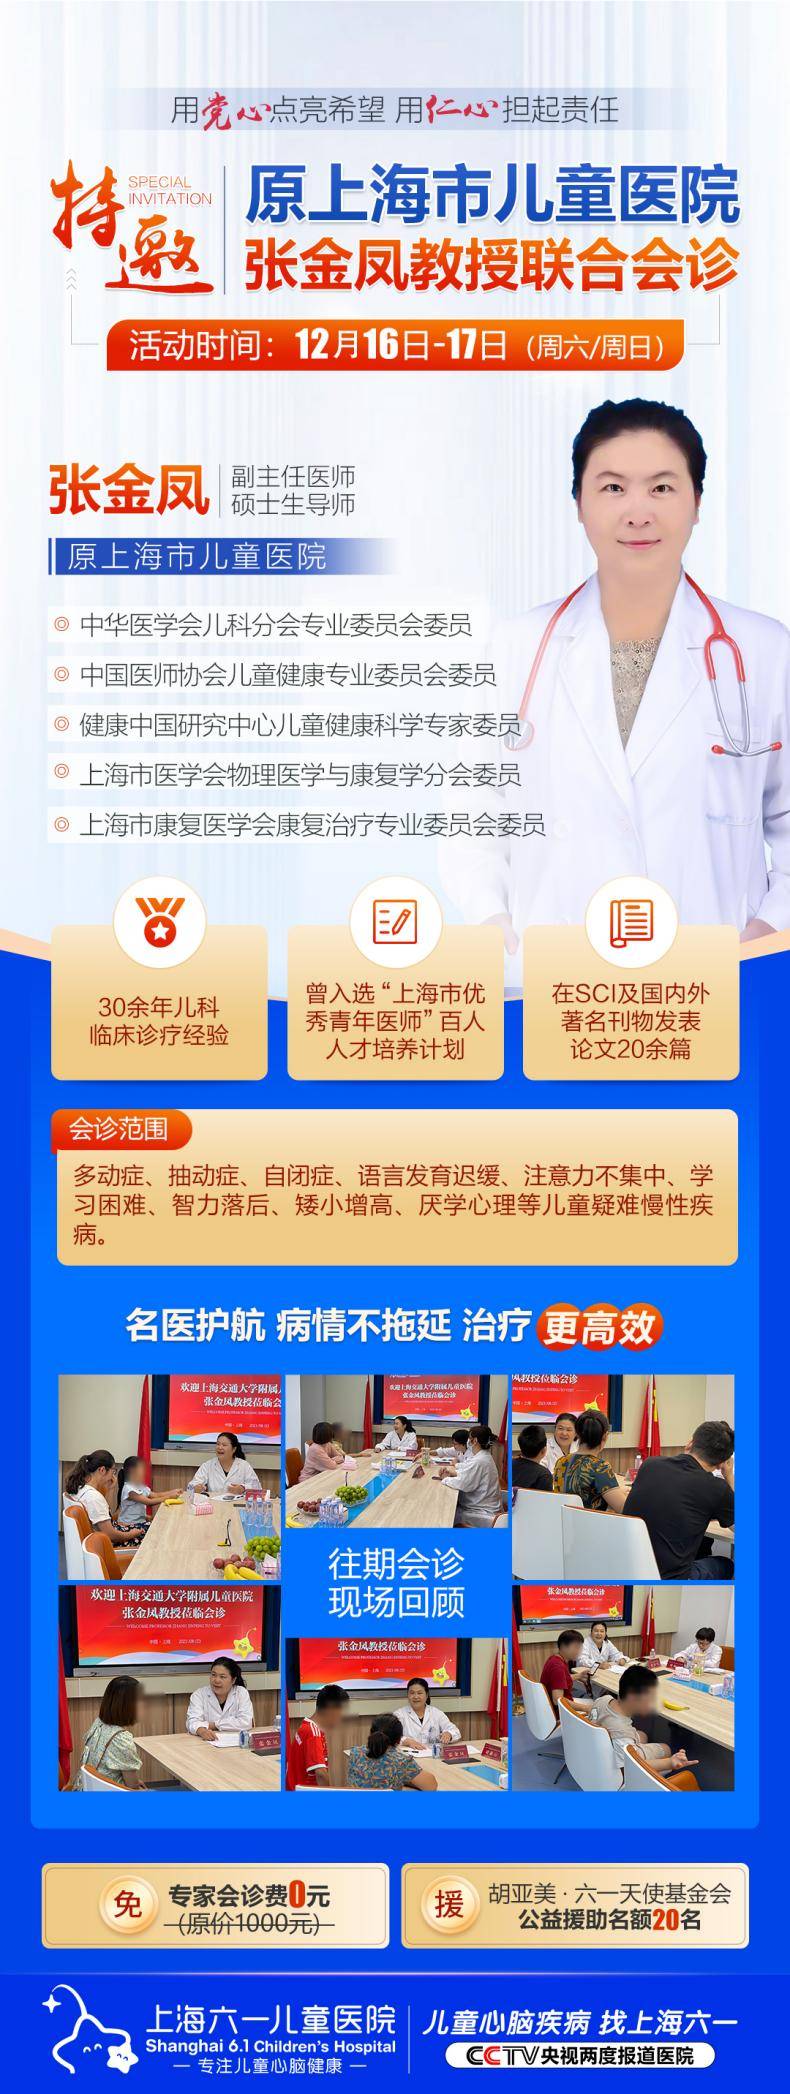 原上海市儿童医院张金凤教授12月16日-17日莅临上海六一儿童医院专家会诊